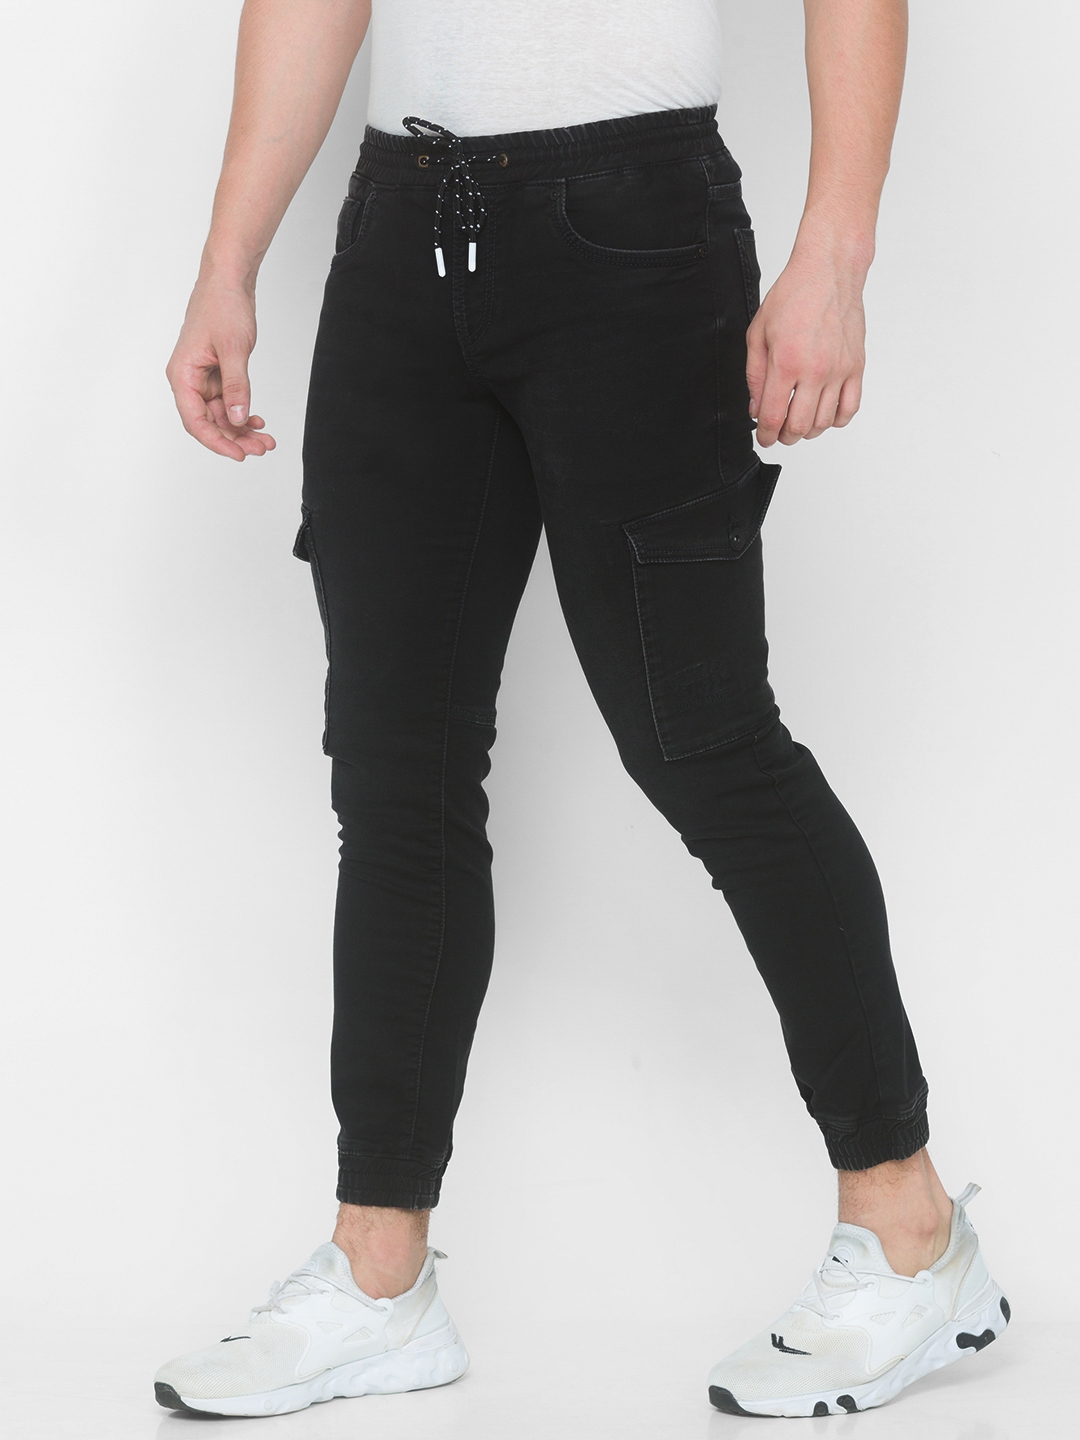 Spykar | Men's Black Cotton Solid Joggers Jeans 3